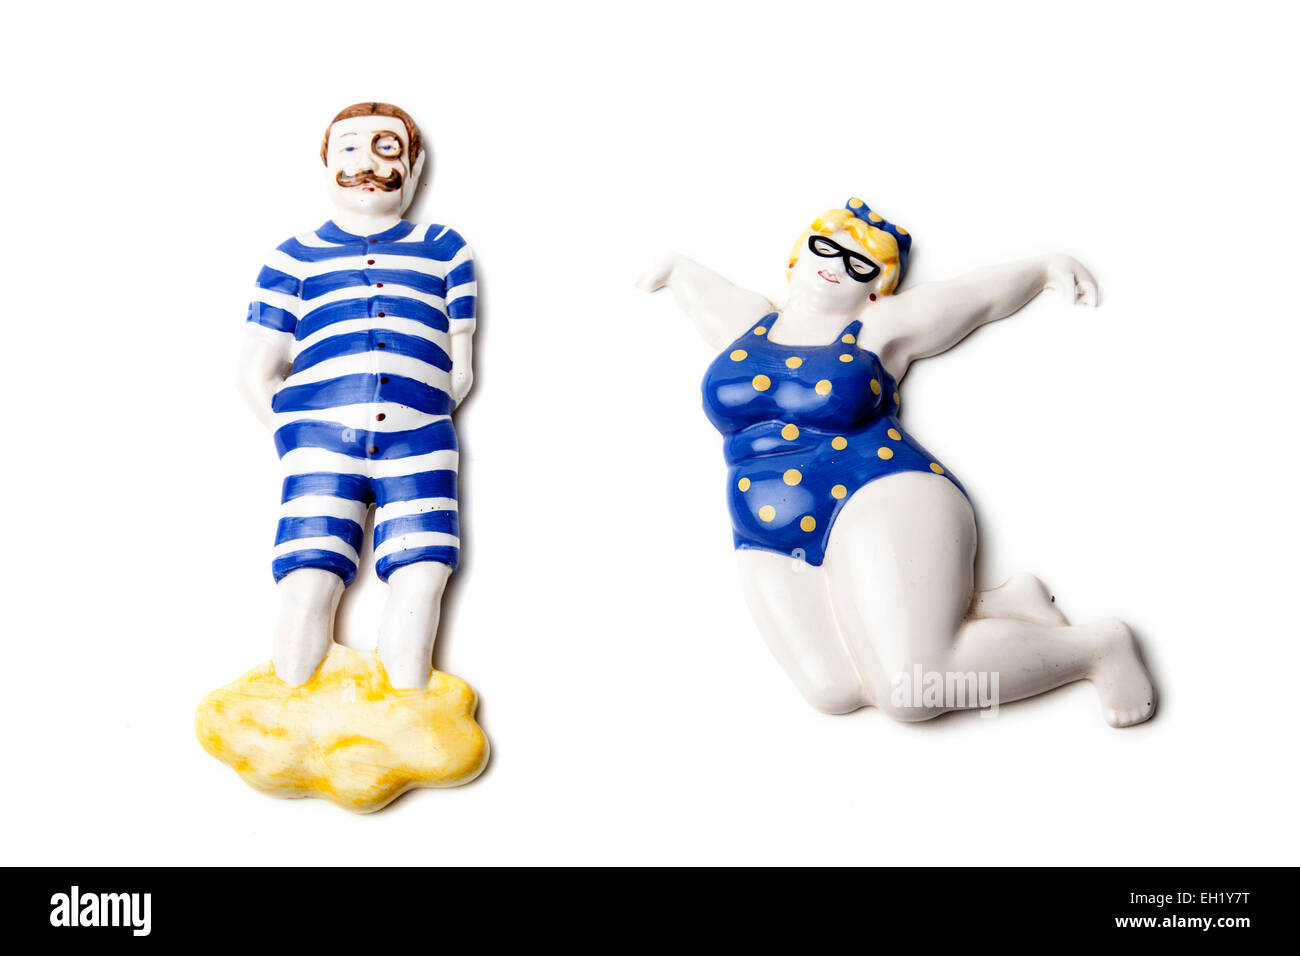 Funny nuotatori da parete in ceramica. Foto Stock